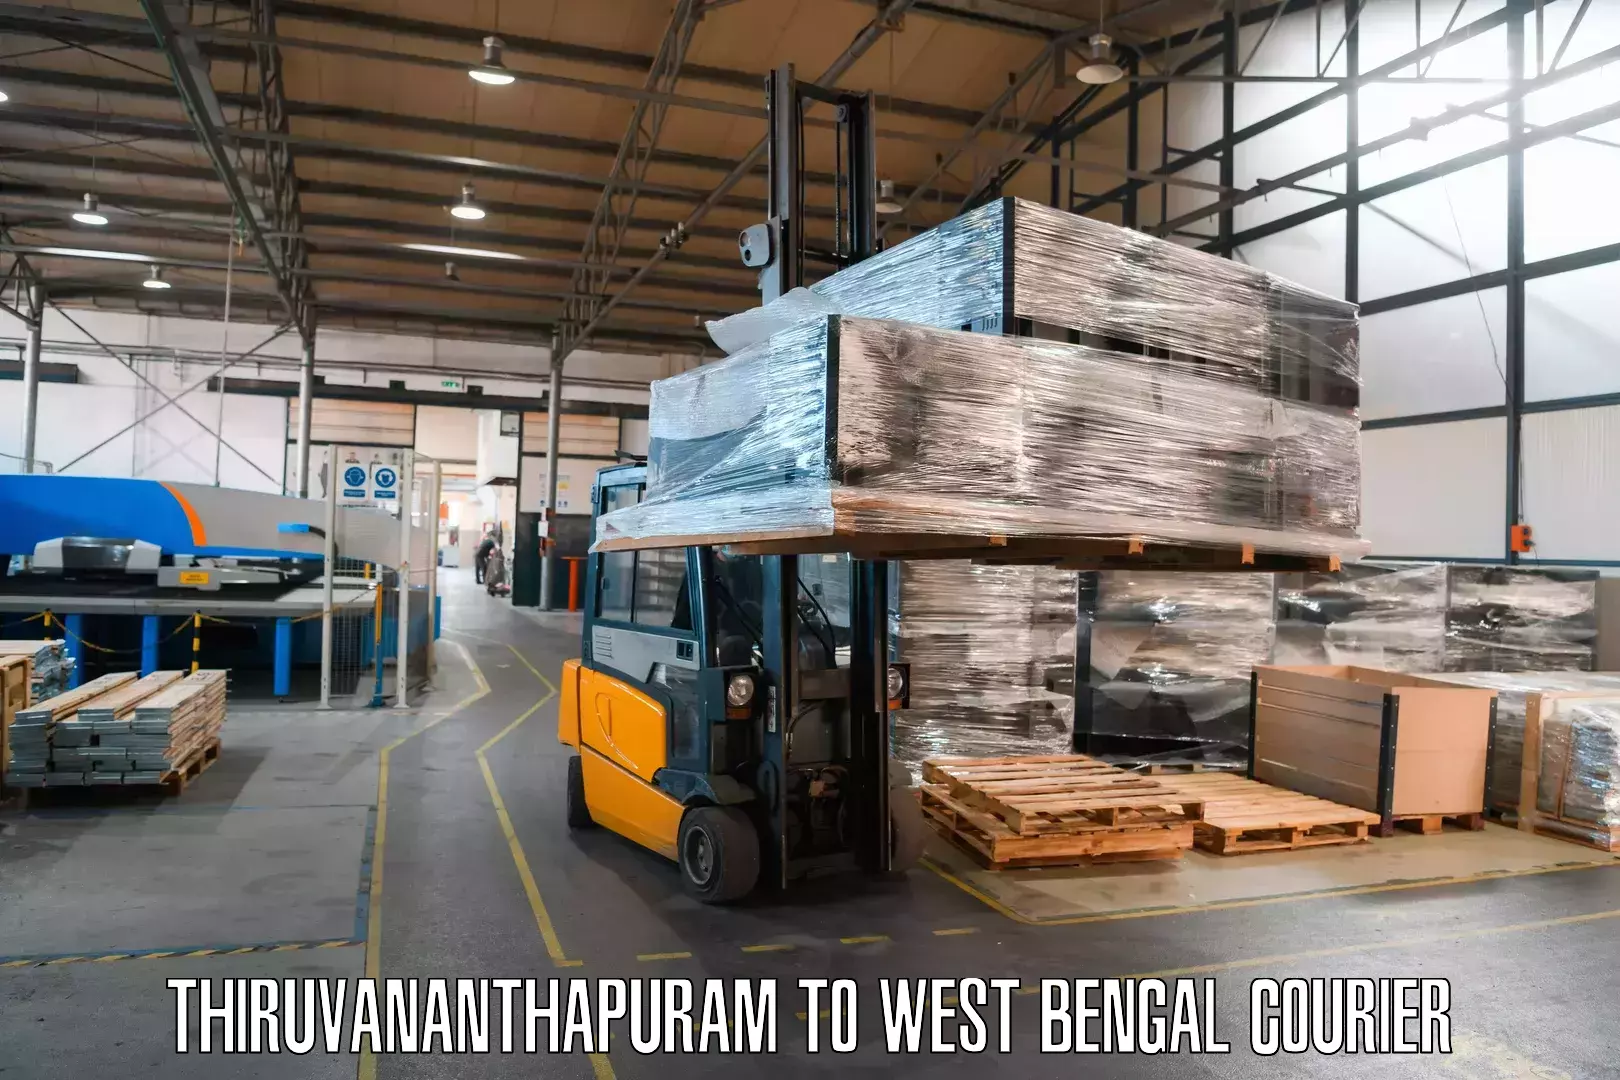 International courier networks Thiruvananthapuram to Bhatpara